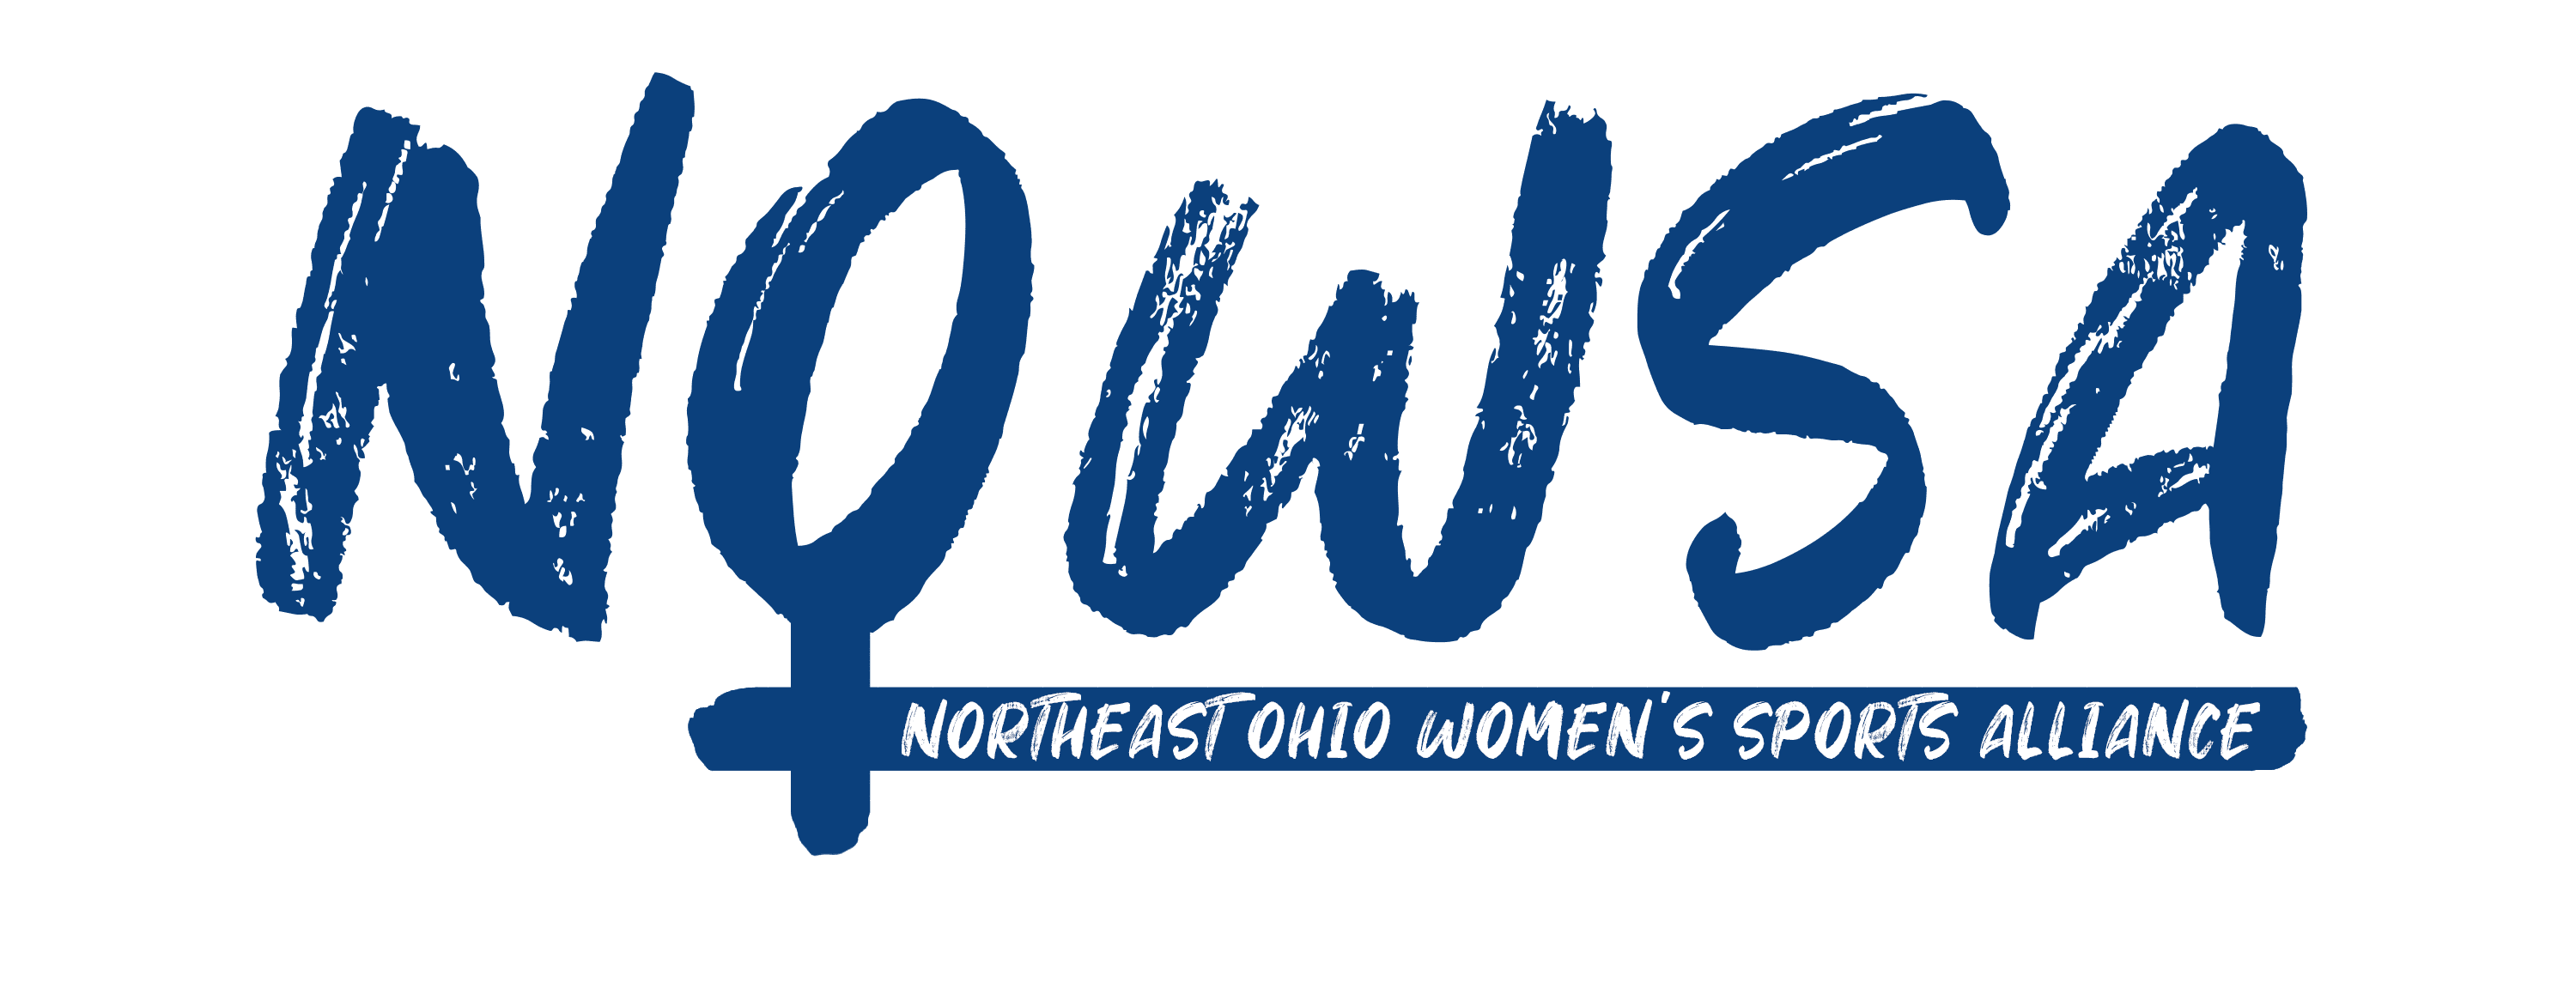 Northeast Ohio Women's Sports Alliance